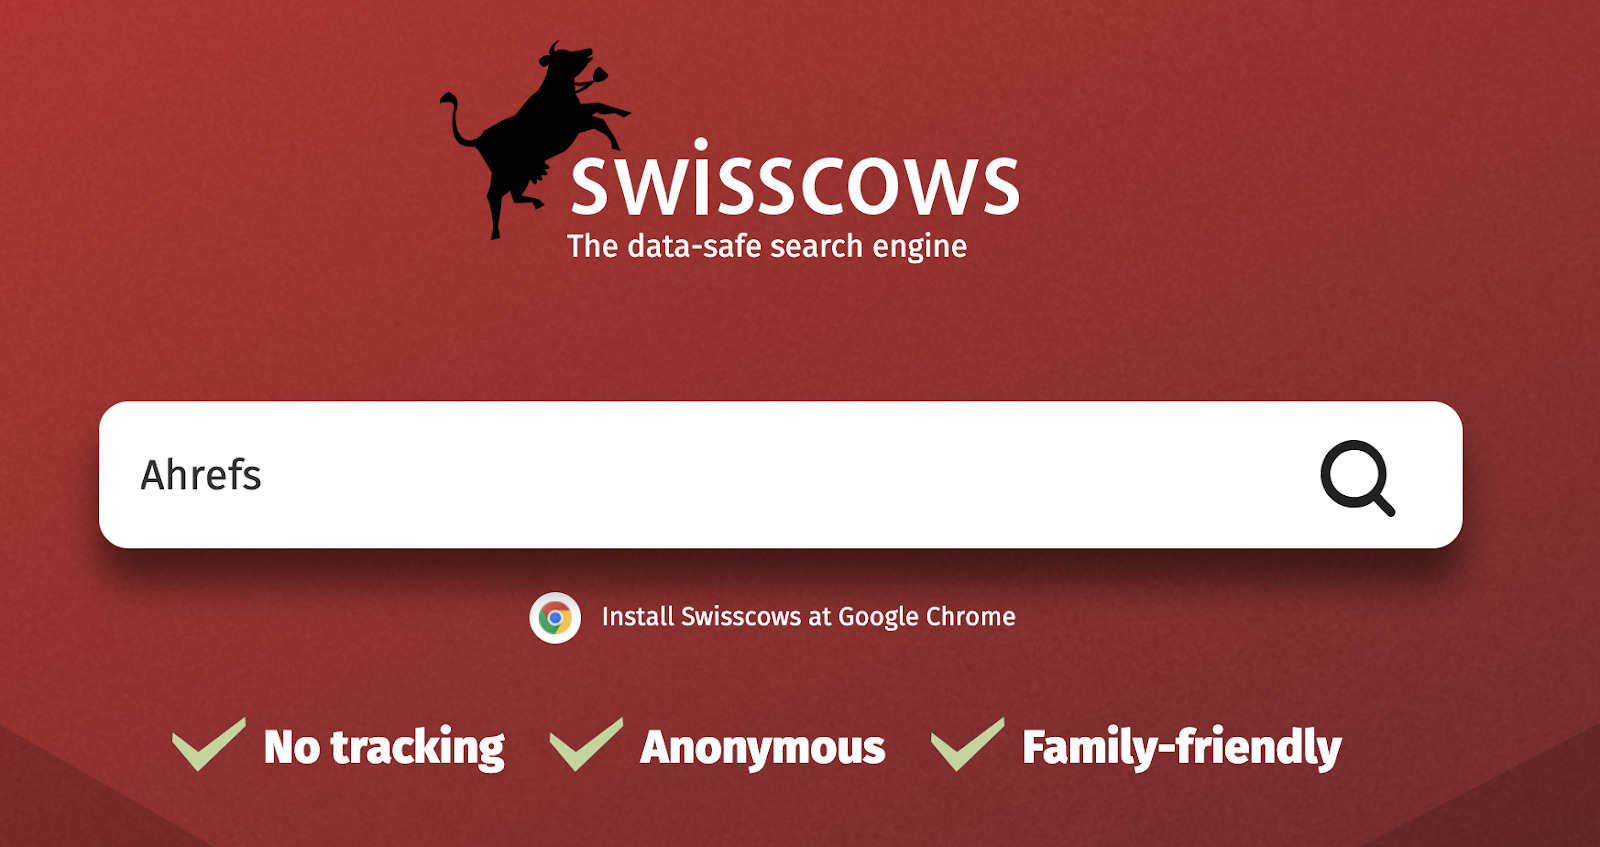 Домашняя страница Swisscows. Поисковый запрос «Ahrefs» в текстовом поле